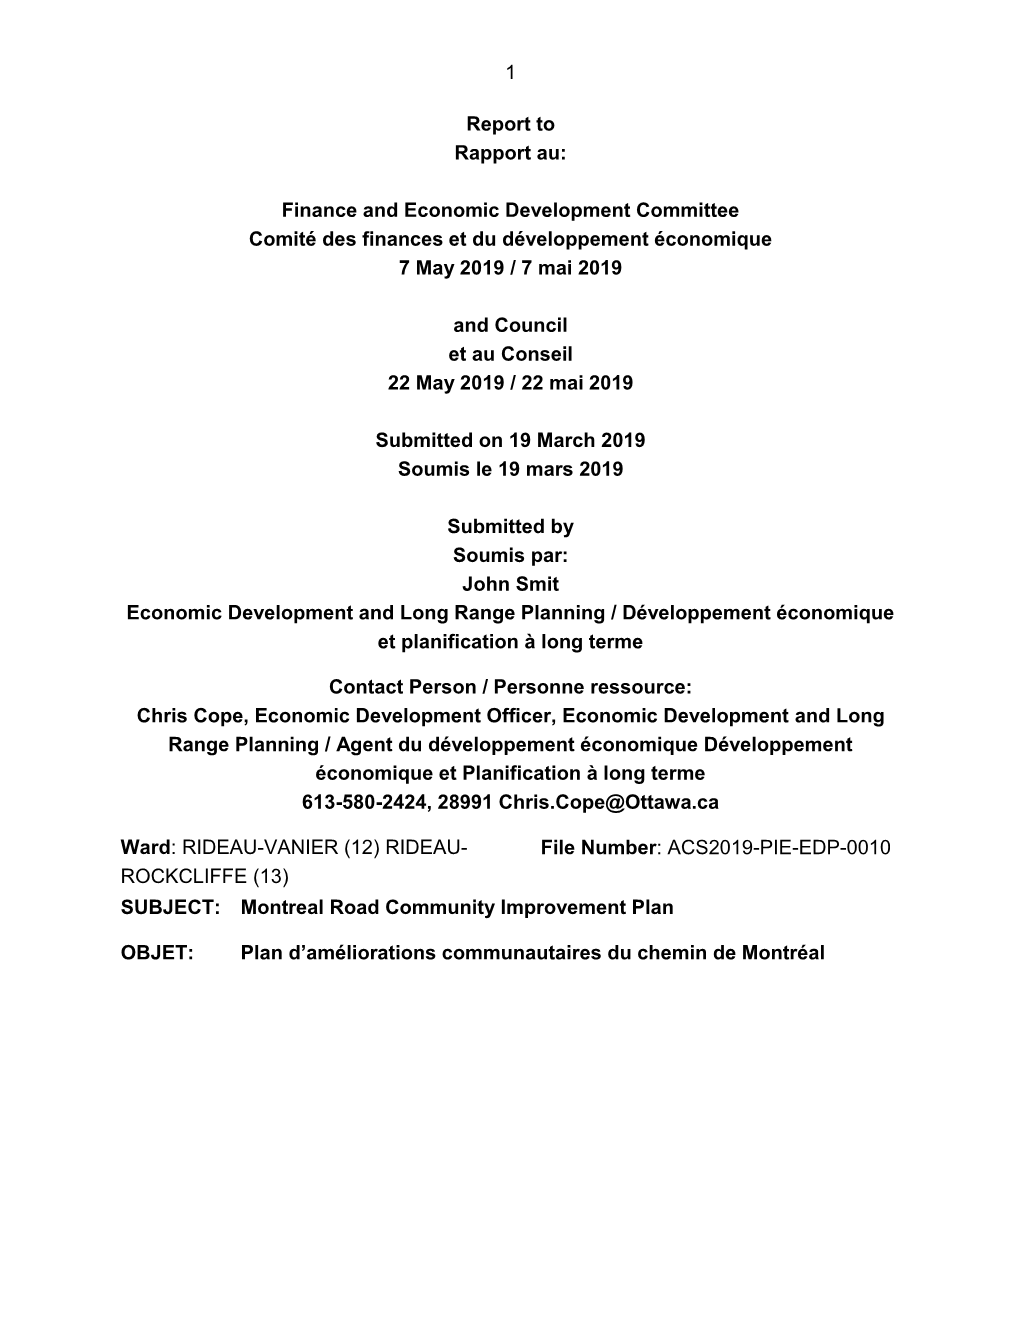 Finance and Economic Development Committee Comité Des Finances Et Du Développement Économique 7 May 2019 / 7 Mai 2019